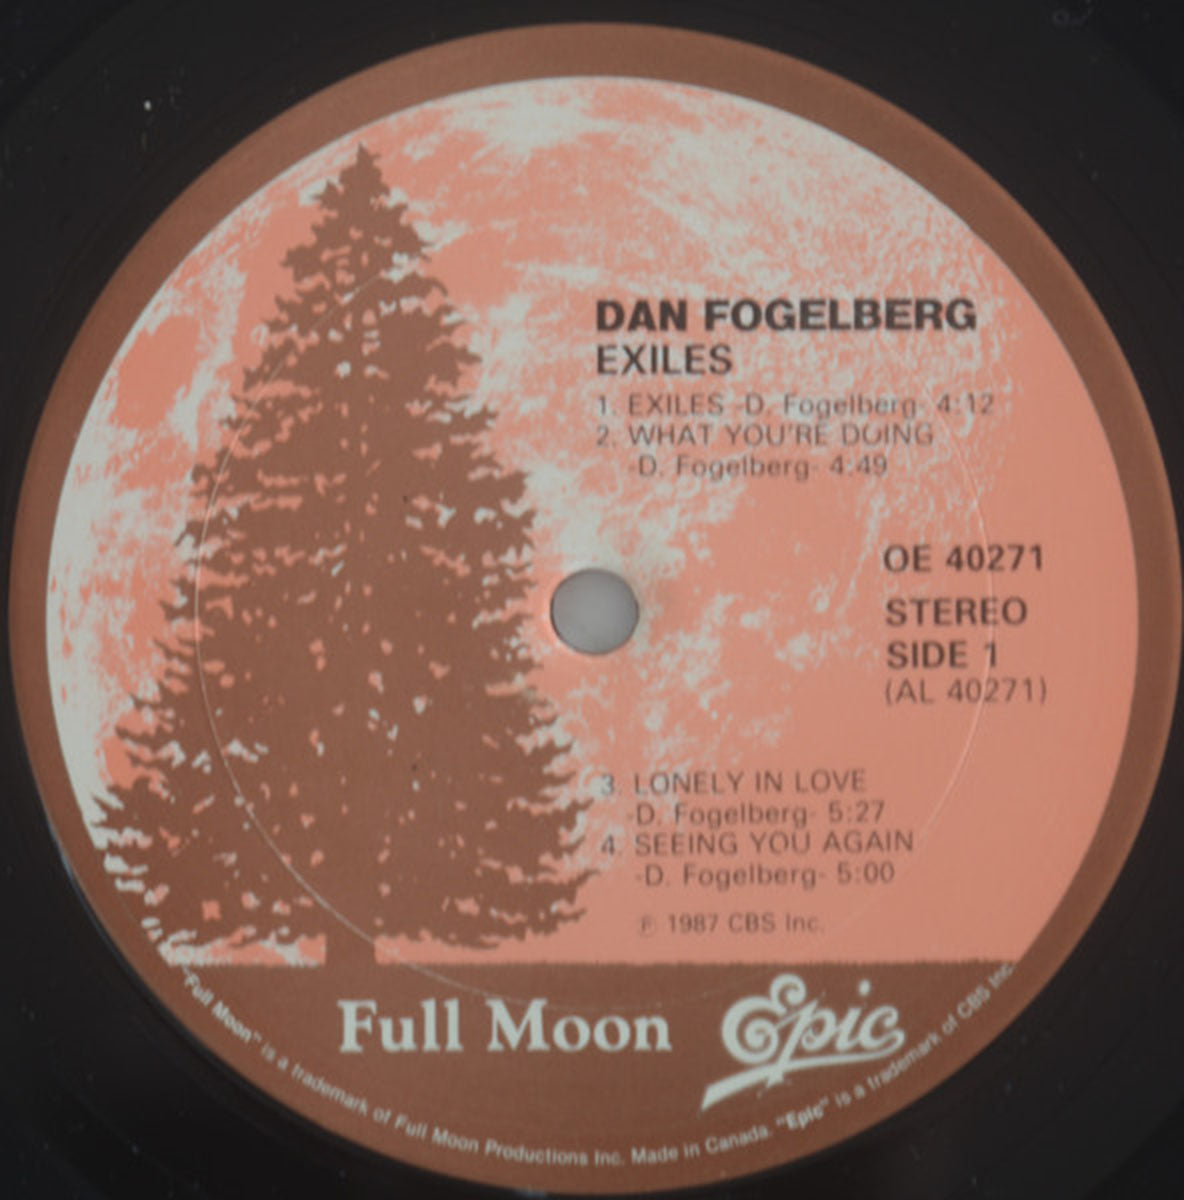 Dan Fogelberg – Exiles